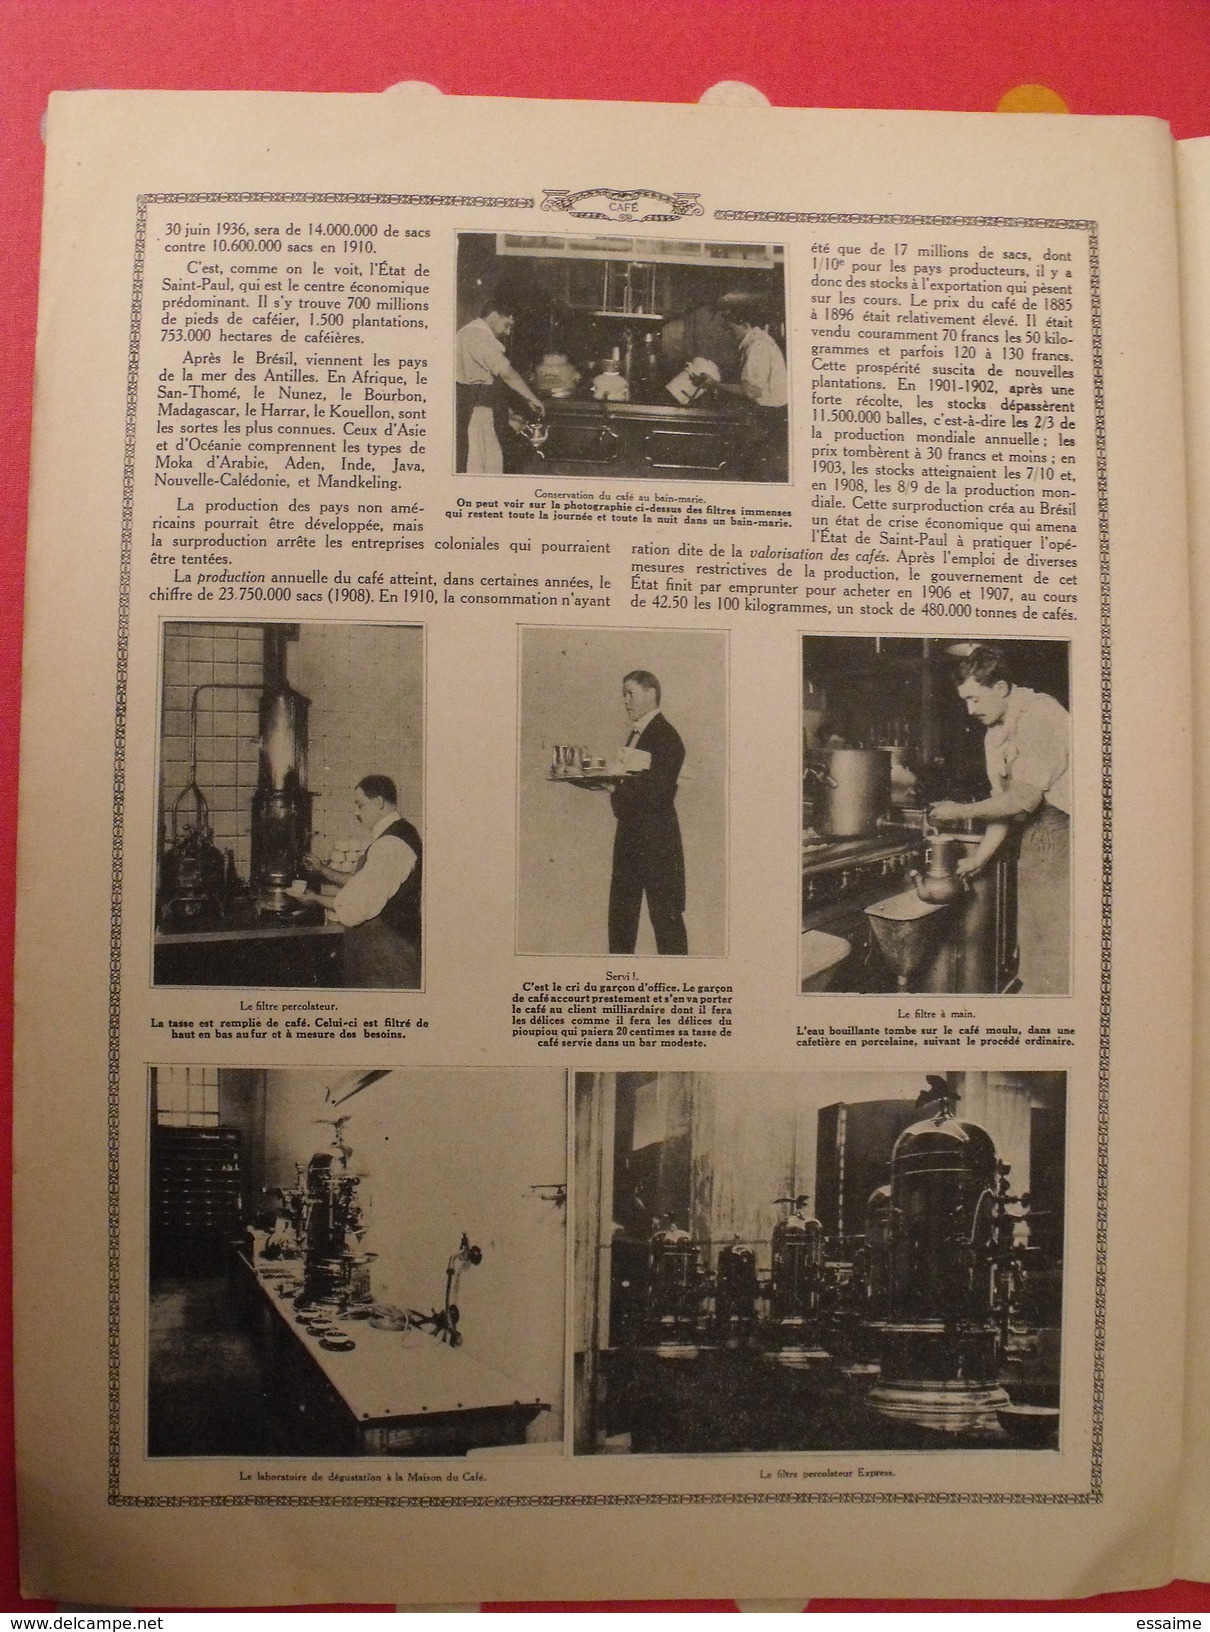 Le monde et la science 1935. bactériologie beurre margarine café champagne chauffage. nombreuses photos encyclopédie